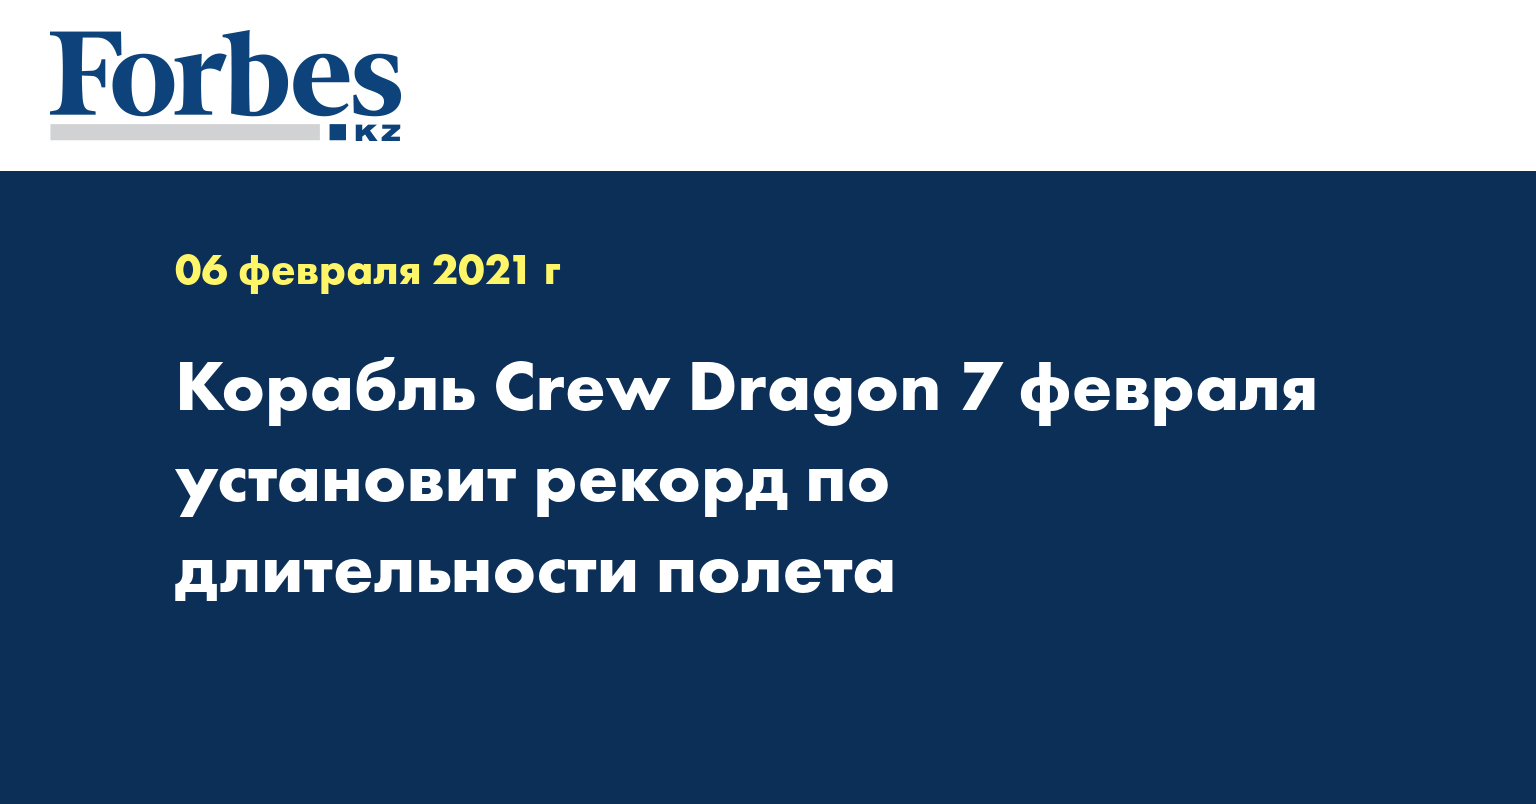 Корабль Crew Dragon 7 февраля установит рекорд по длительности полета